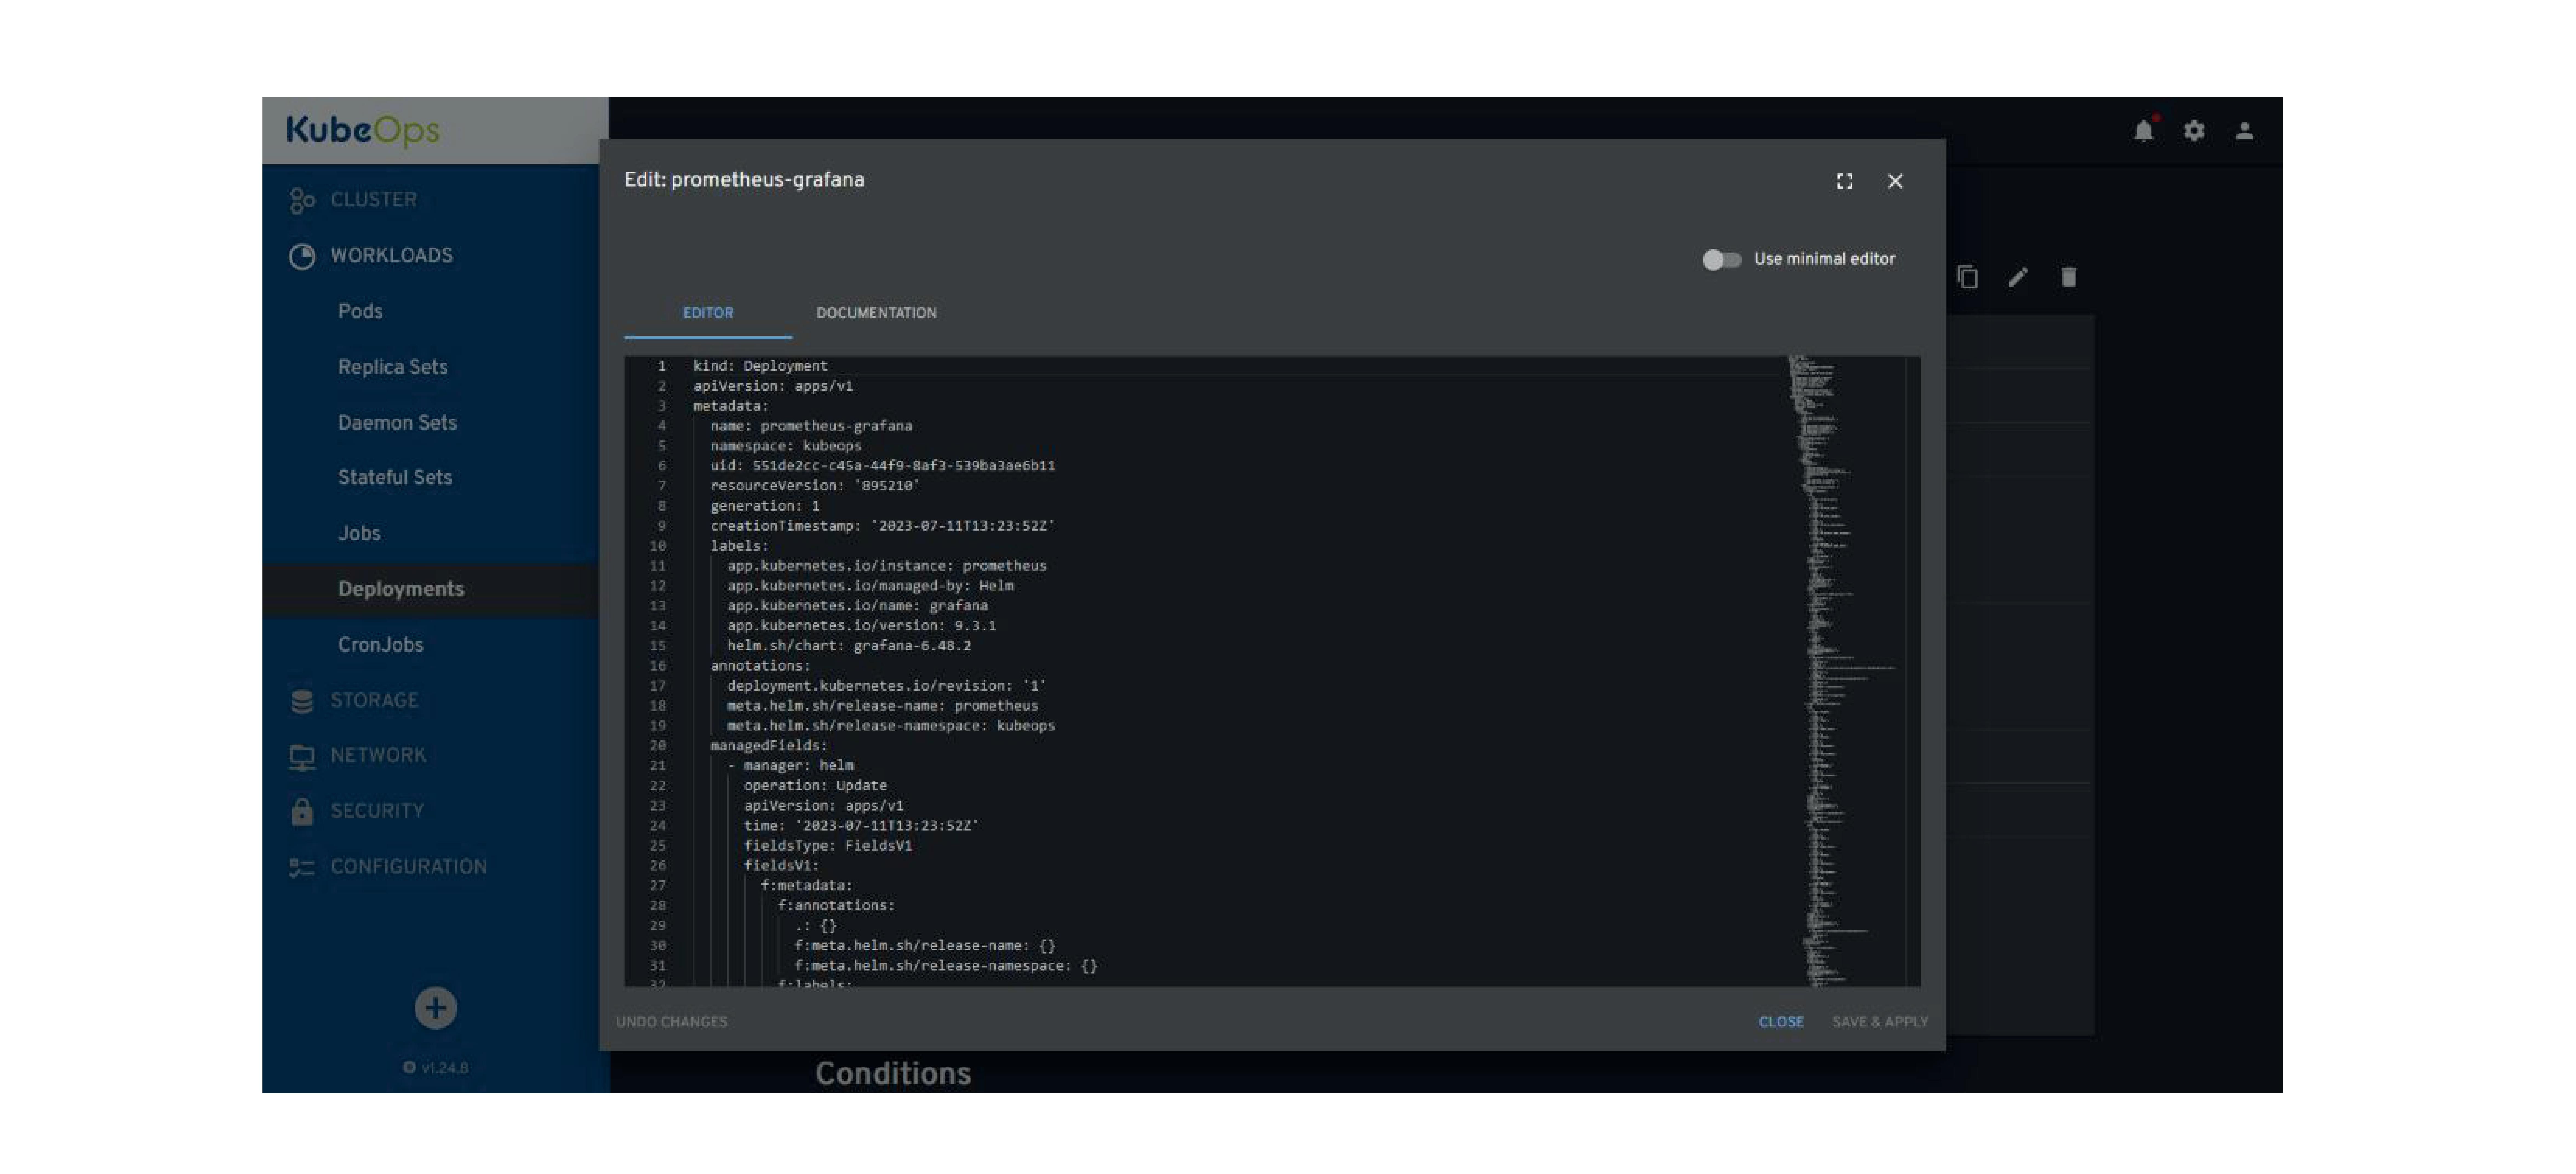 Das Bild zeigt einen Bildschirm der KubeOps-Benutzeroberfläche zur Bearbeitung der Deployment-Konfiguration von "prometheus-grafana". Auf der linken Seite ist eine Navigationsleiste mit Optionen für "Cluster", "Workloads", zu denen "Pods", "Replica Sets", "Daemon Sets", "Stateful Sets", "Jobs", "Deployments", "CronJobs" gehören, sowie Abschnitte für "Storage", "Network", "Security" und "Configuration". Das Hauptpanel ist ein Editorfenster mit YAML-Code, der die Deployment-Einstellungen wie Art, API-Version, Metadaten, Labels und für Helm-Management spezifische Annotationen detailliert beschreibt. Der YAML-Code enthält Abschnitte für Metadaten wie Name, Namespace, Labels und Annotationen, einschließlich der von Helm verwalteten Release-Namen und -Namespaces. Die Schnittstelle hat ein minimalistisches, dunkles Design mit Optionen zum "Schließen", "Speichern & Anwenden" und zum Wechseln zu einem "minimalen Editor".